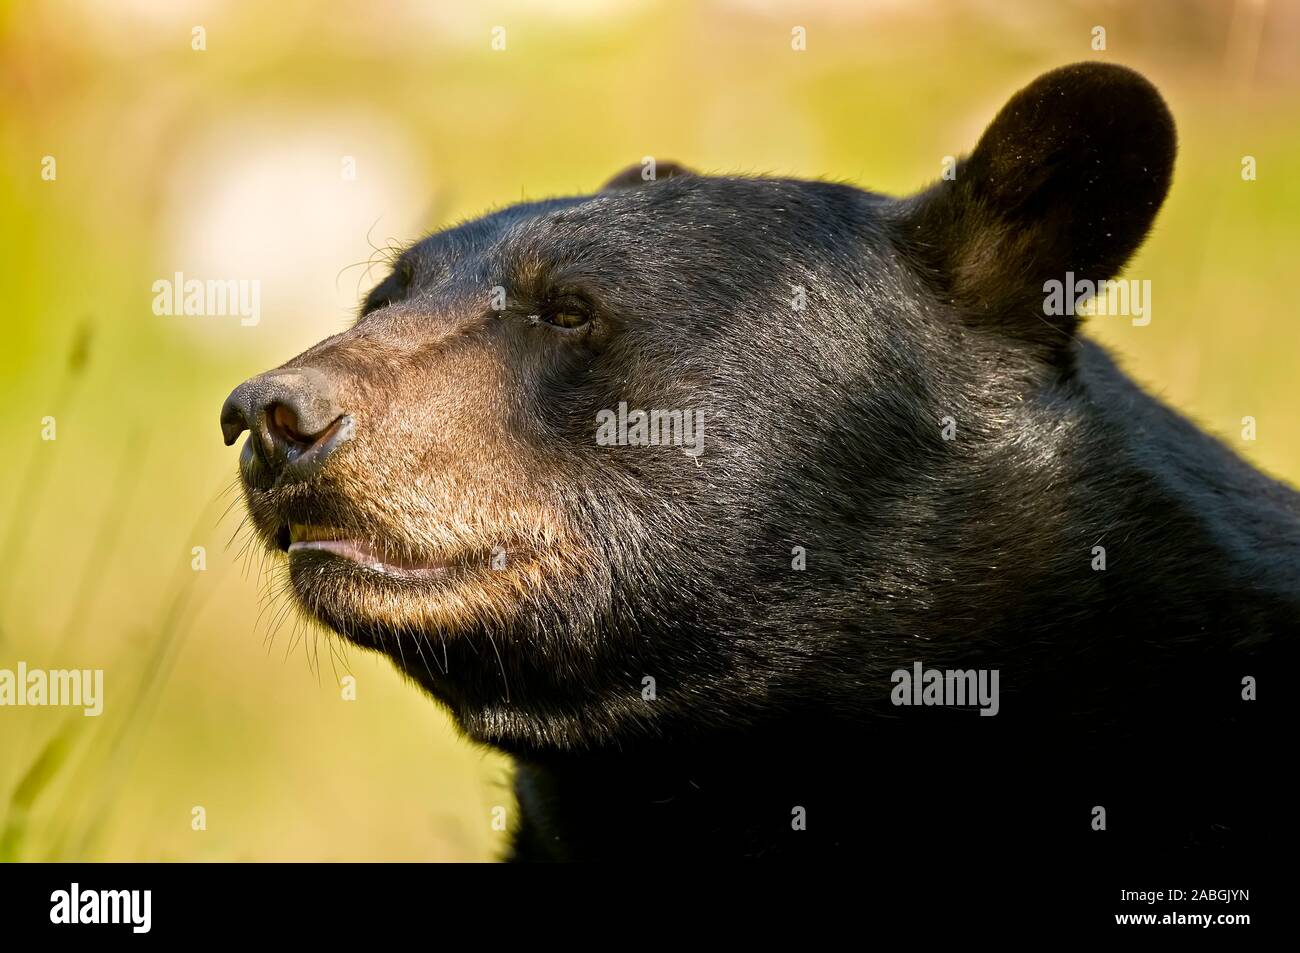 Un retrato de oso negro, el oso mirando hacia la izquierda. Foto de stock